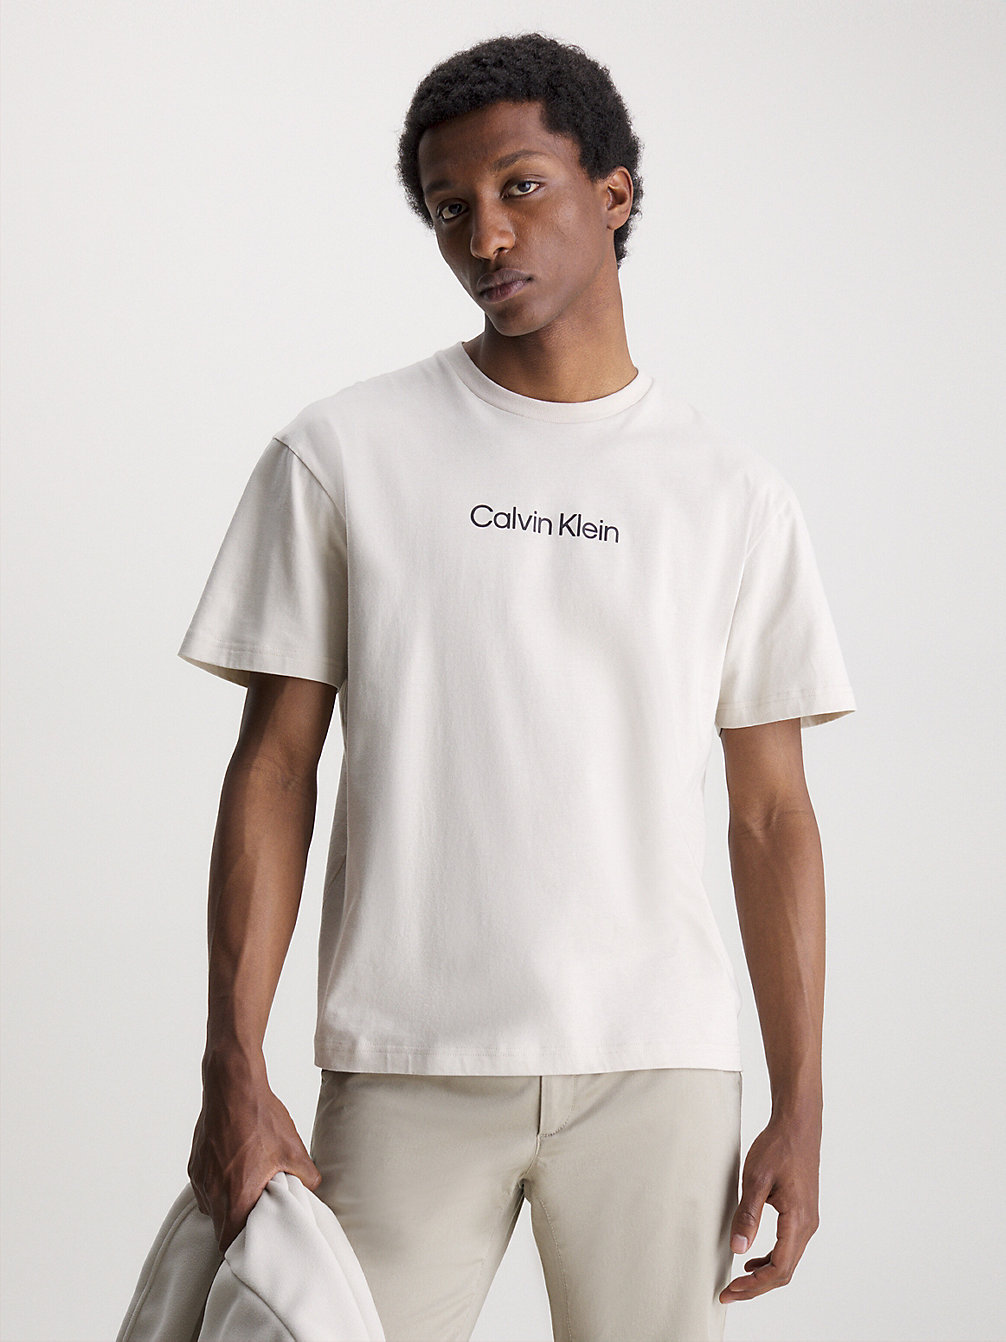 STONY BEIGE Logo-T-Shirt Aus Bio-Baumwolle undefined Herren Calvin Klein